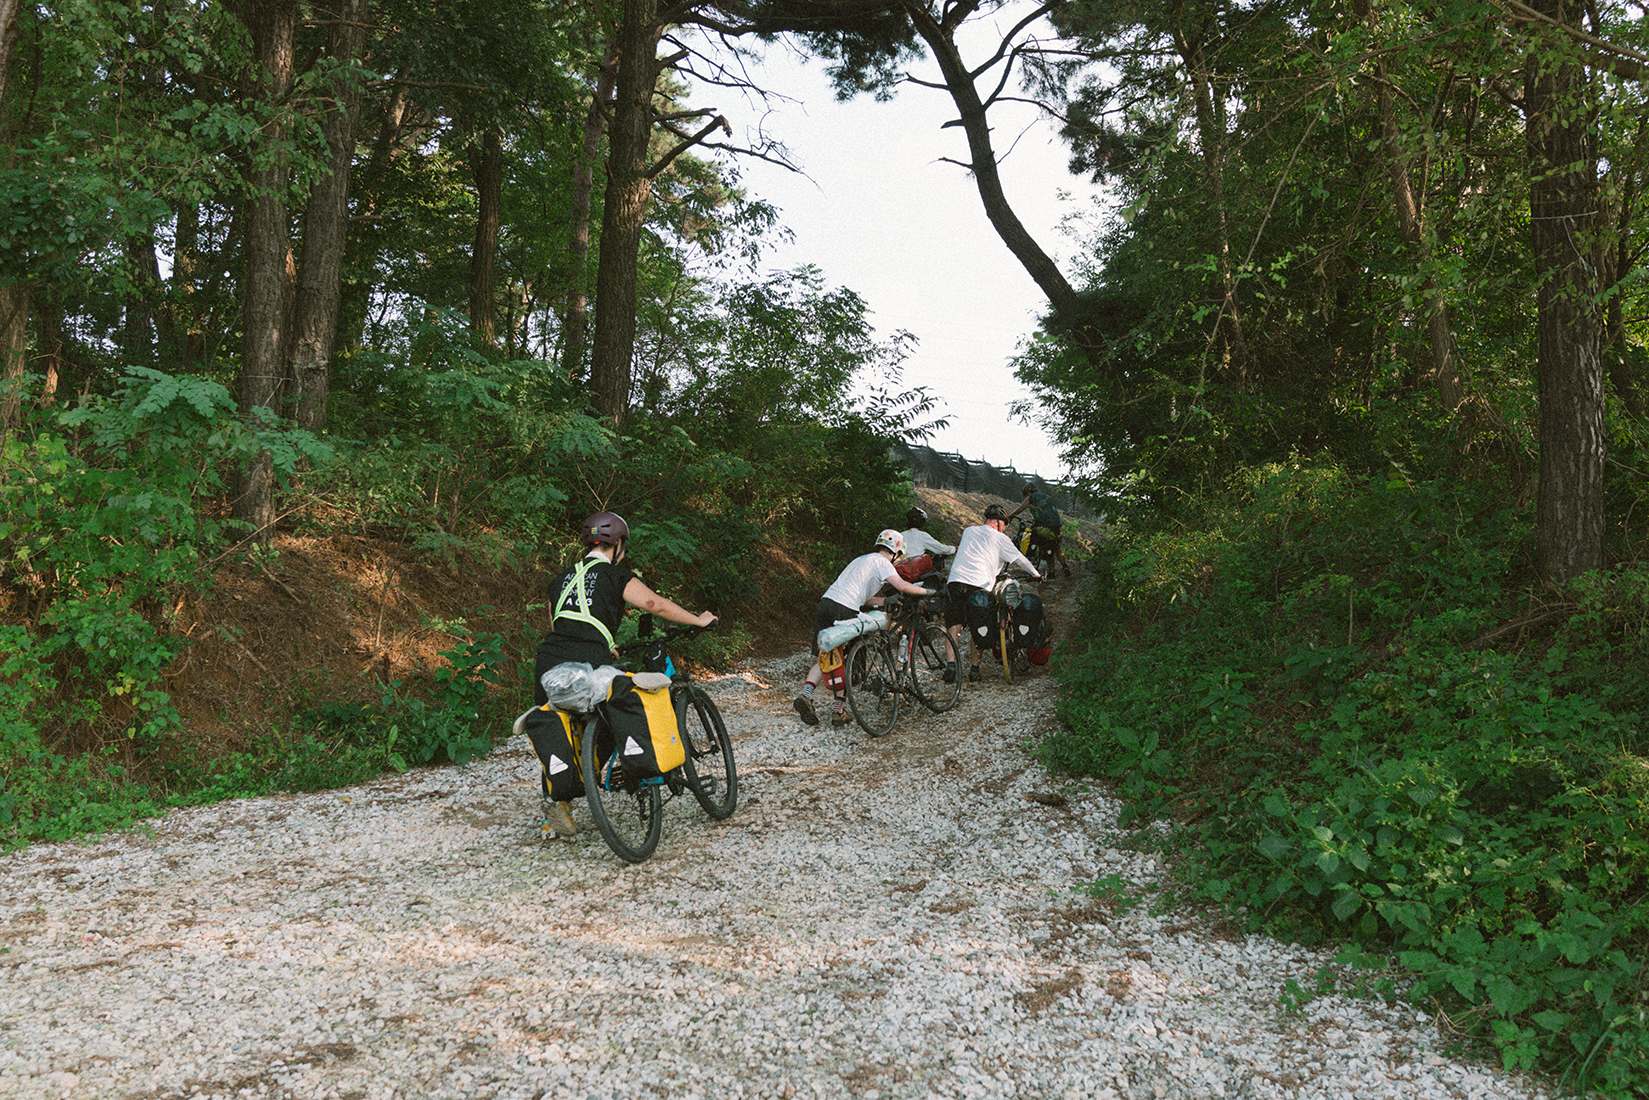 나무와 풀이 우거진 사이에 비포장 오르막 길이 있고 몇몇 사람들이 자전거를 끌고 올라가고 있다. 